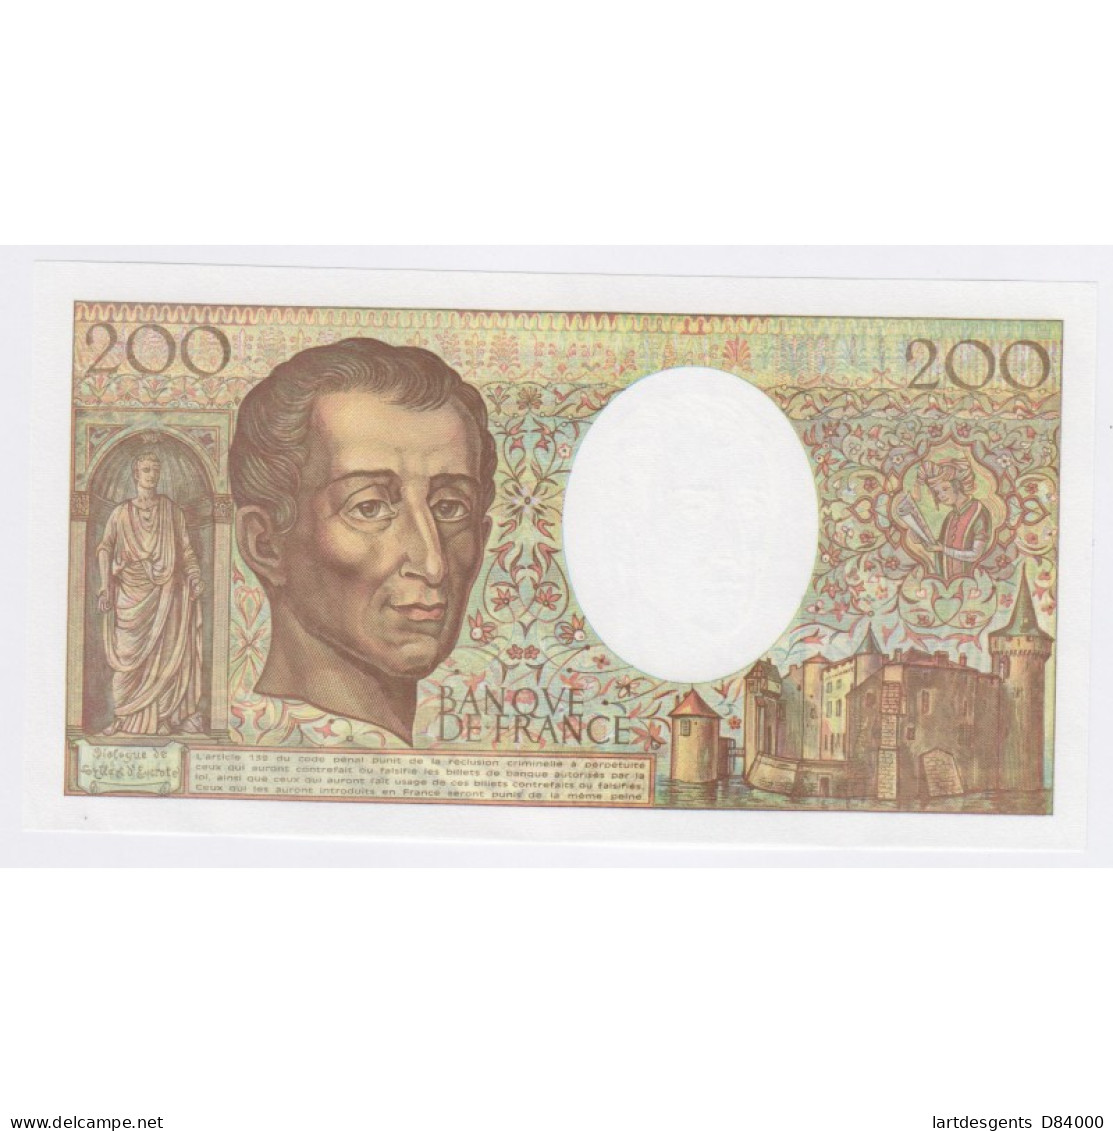 France 200 Francs Montesquieu 1992, P.120 941276, Neuf, Cote 60 Euros, Lartdesgents - 200 F 1981-1994 ''Montesquieu''